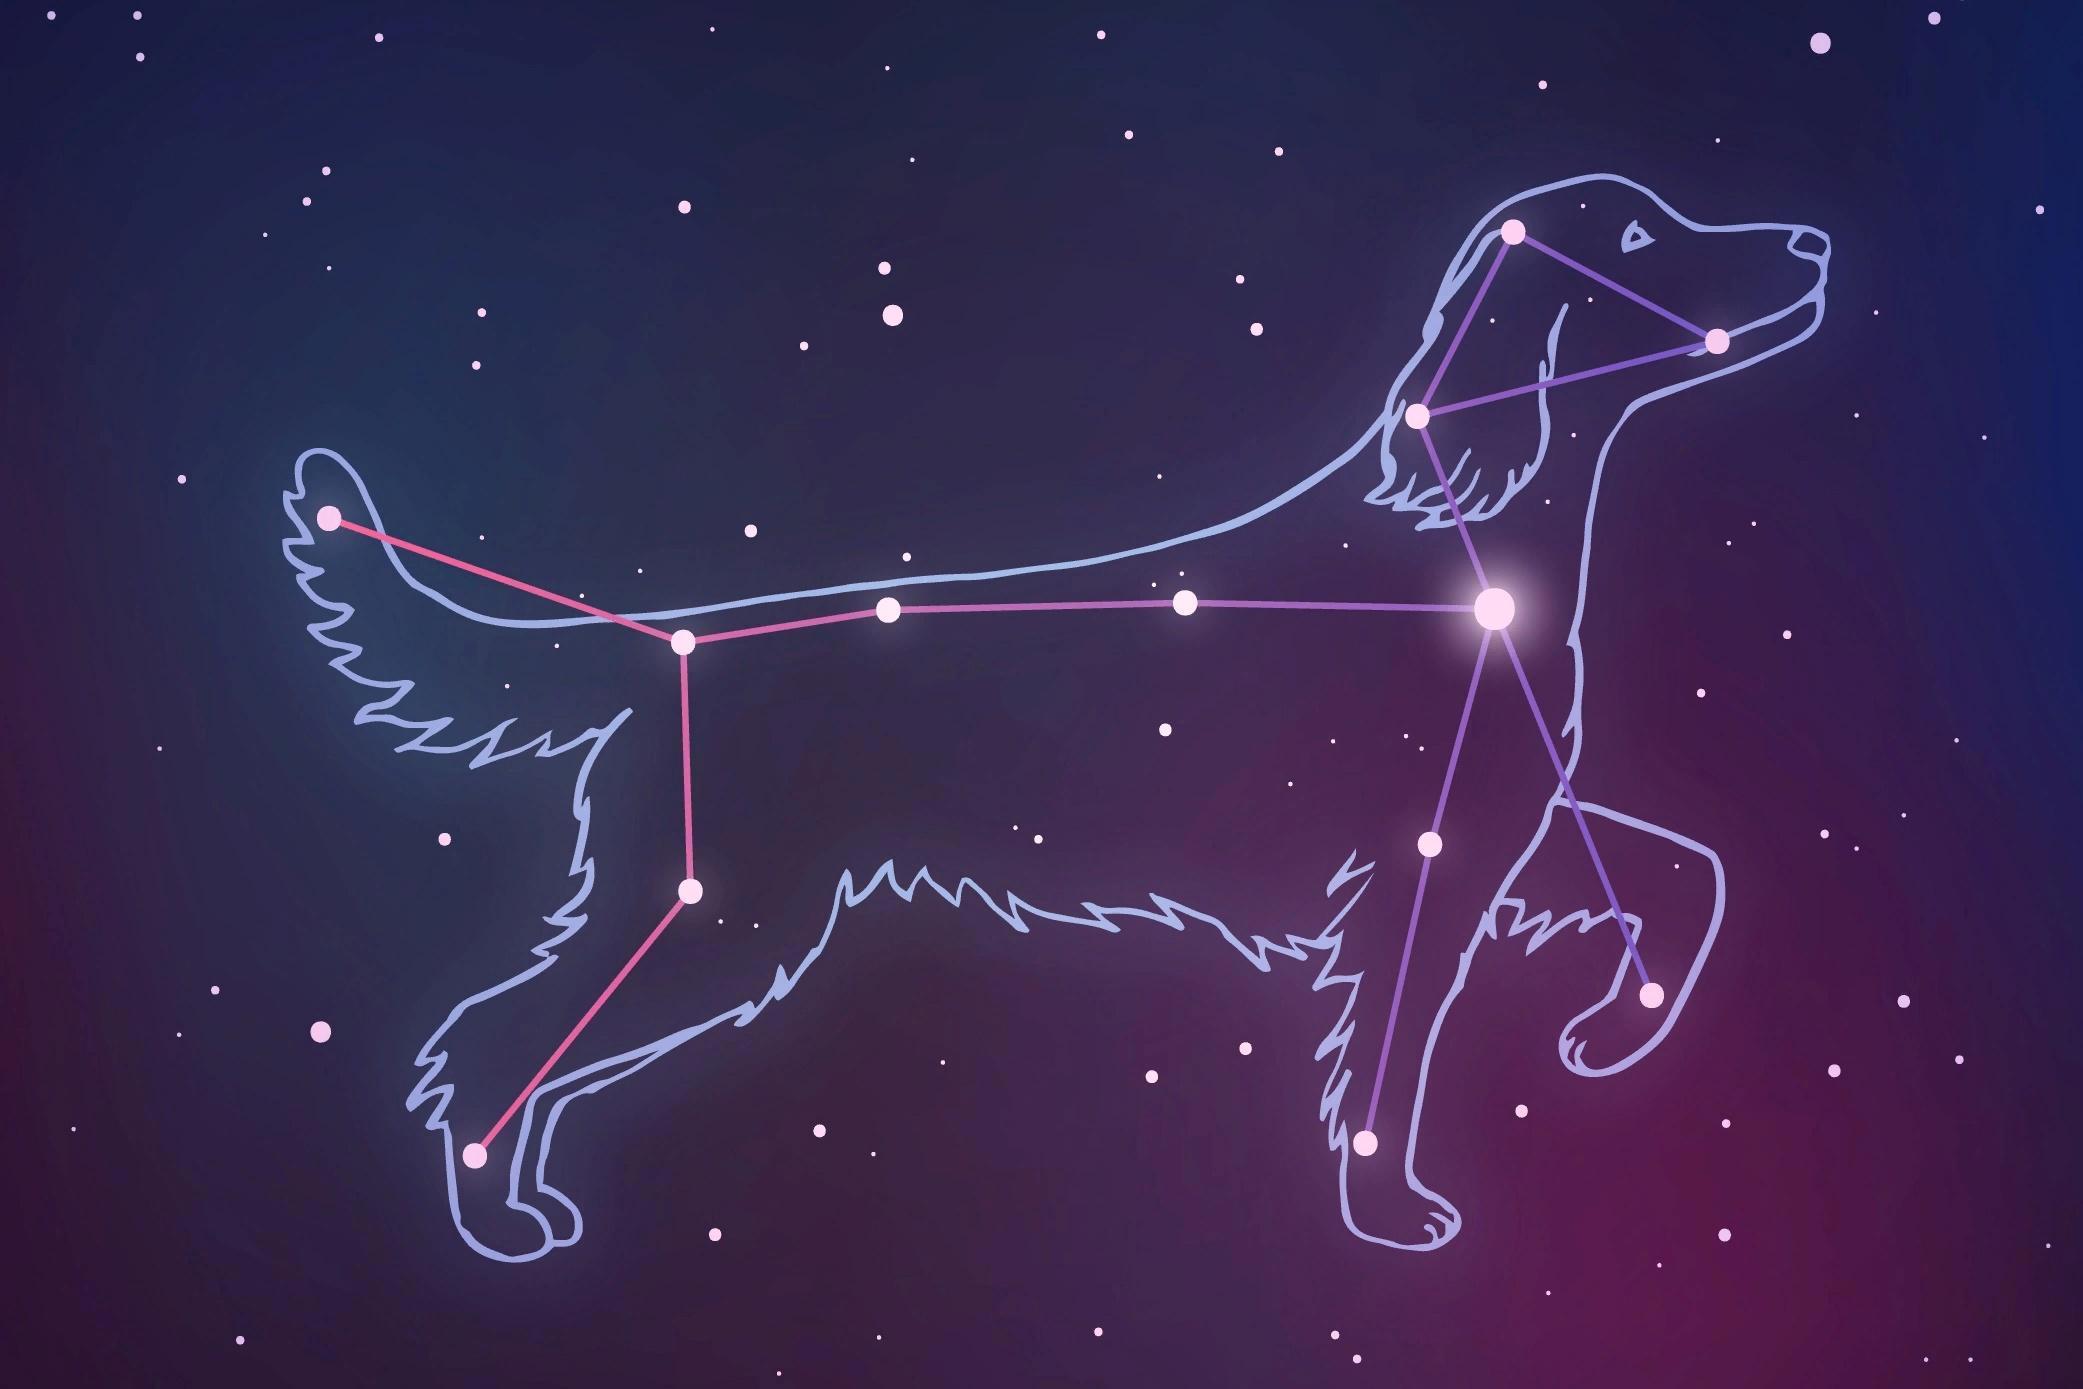 Сириус звезда какого созвездия. Созвездие большого пса Сириус. Созвездие Сириус Альфа большого пса. Созвездие большого пса со звездой Сириус на небе. Канис Майер Созвездие.